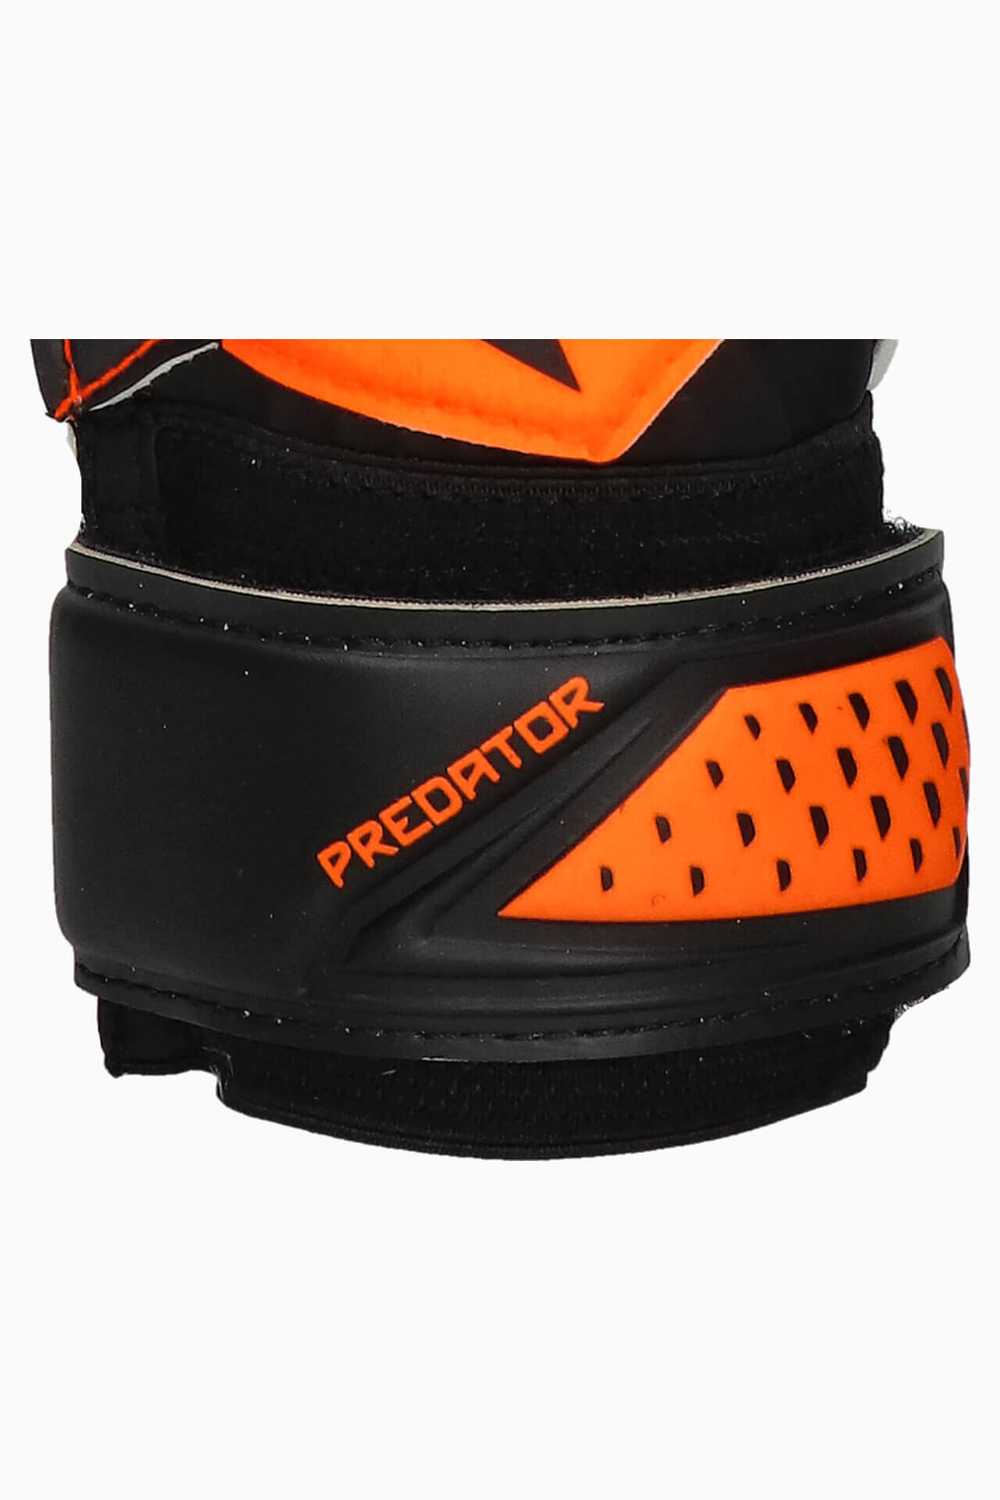 Вратарские перчатки adidas Predator Training